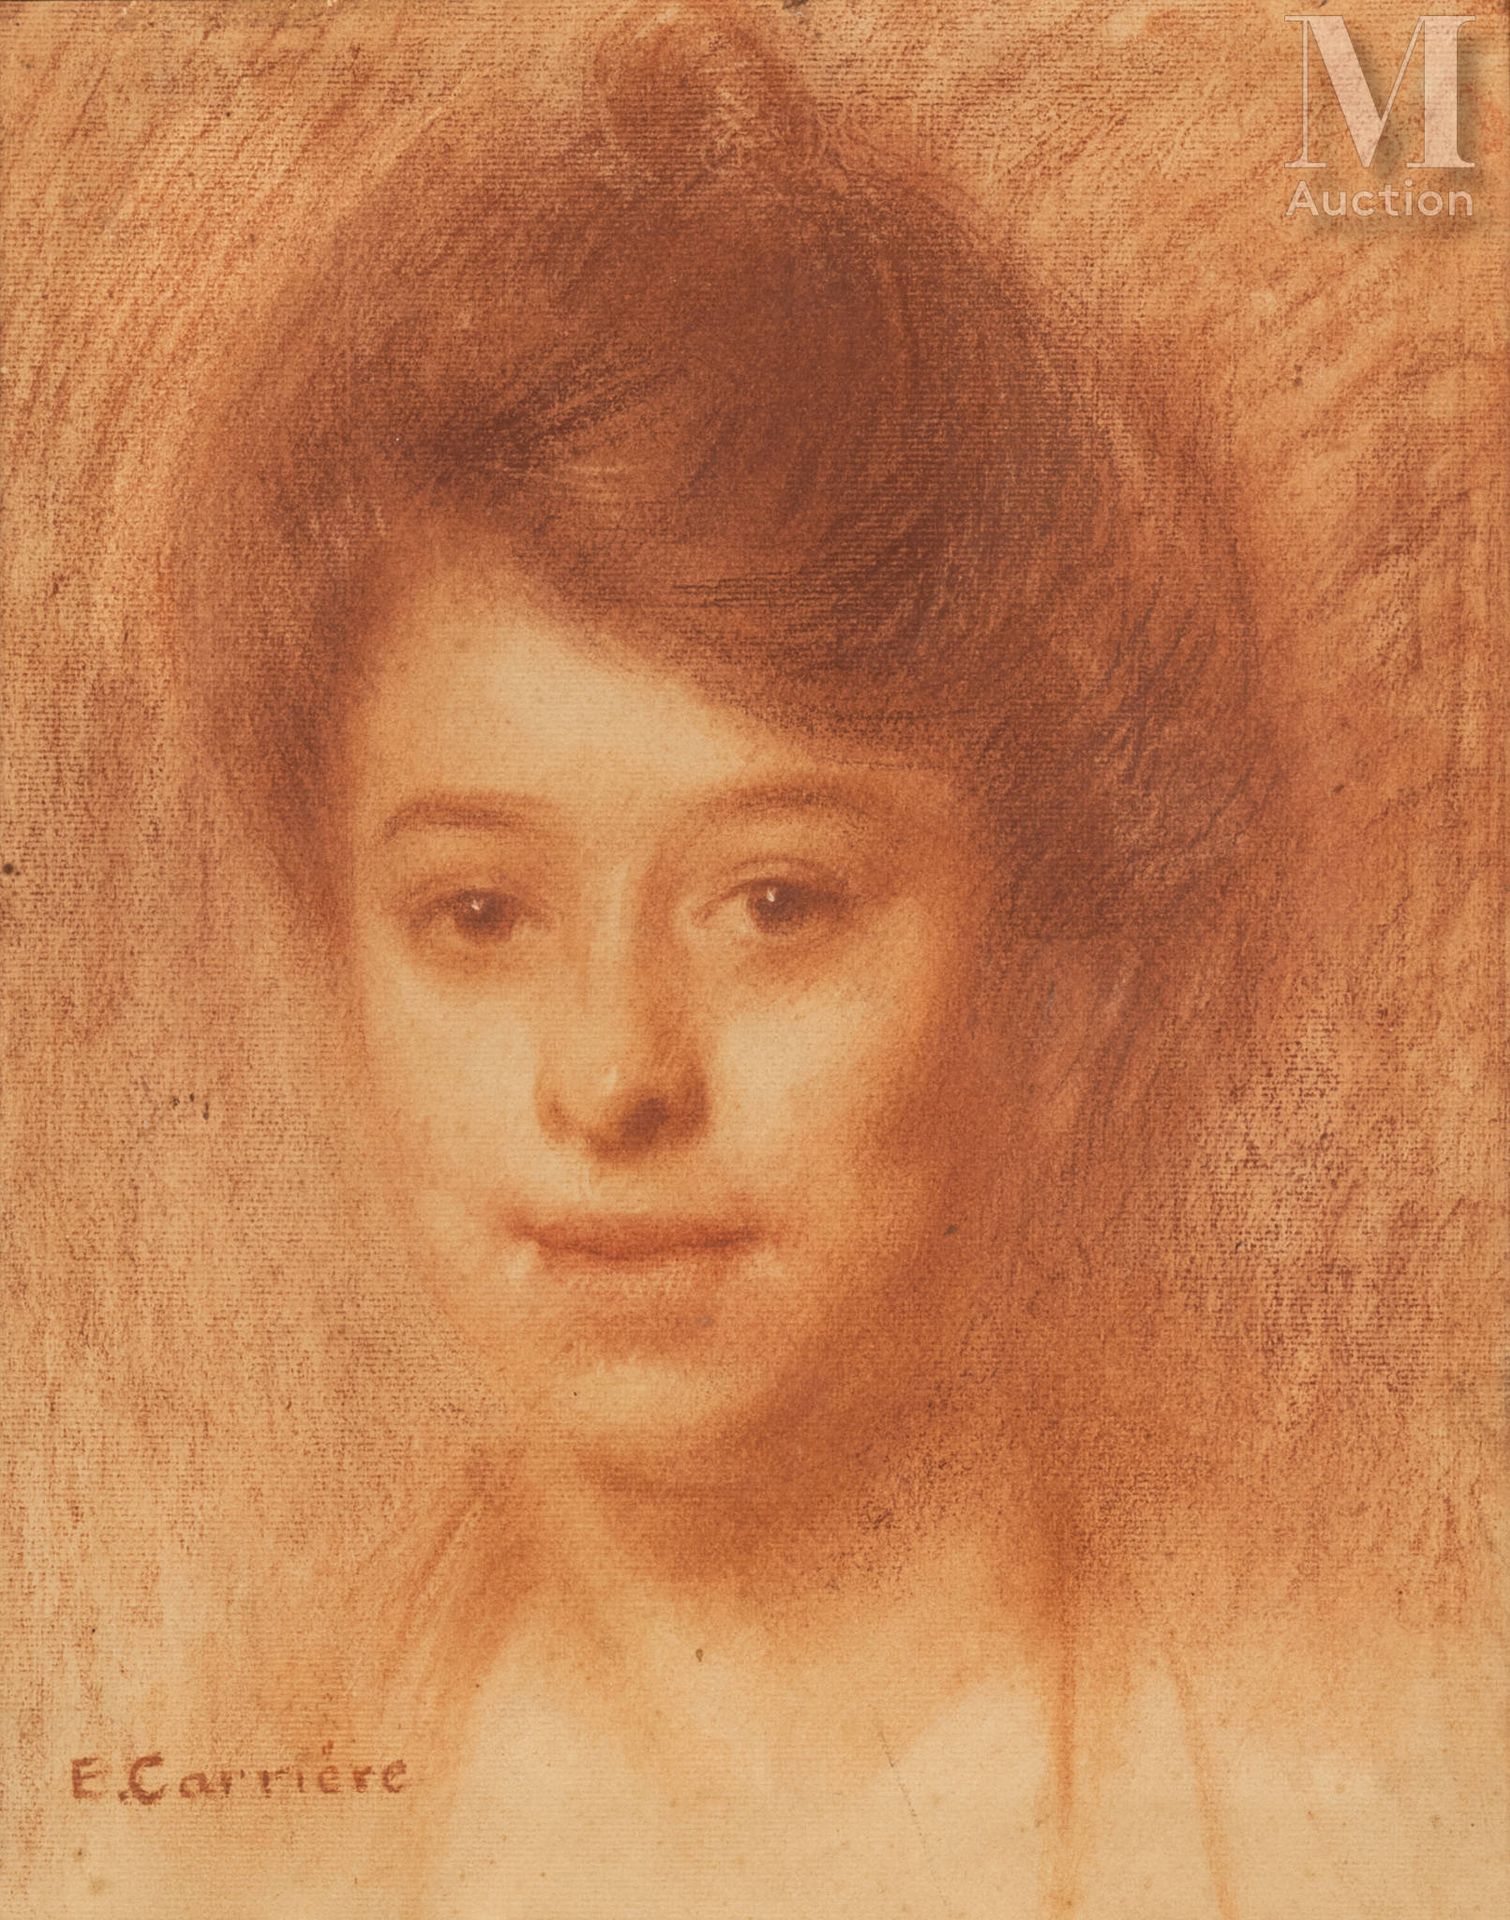 Eugène CARRIERE (Gournay-sur-Marne 1849 - Paris 1906) 发髻女人的画像

三毛 
35.5 x 28 cm &hellip;